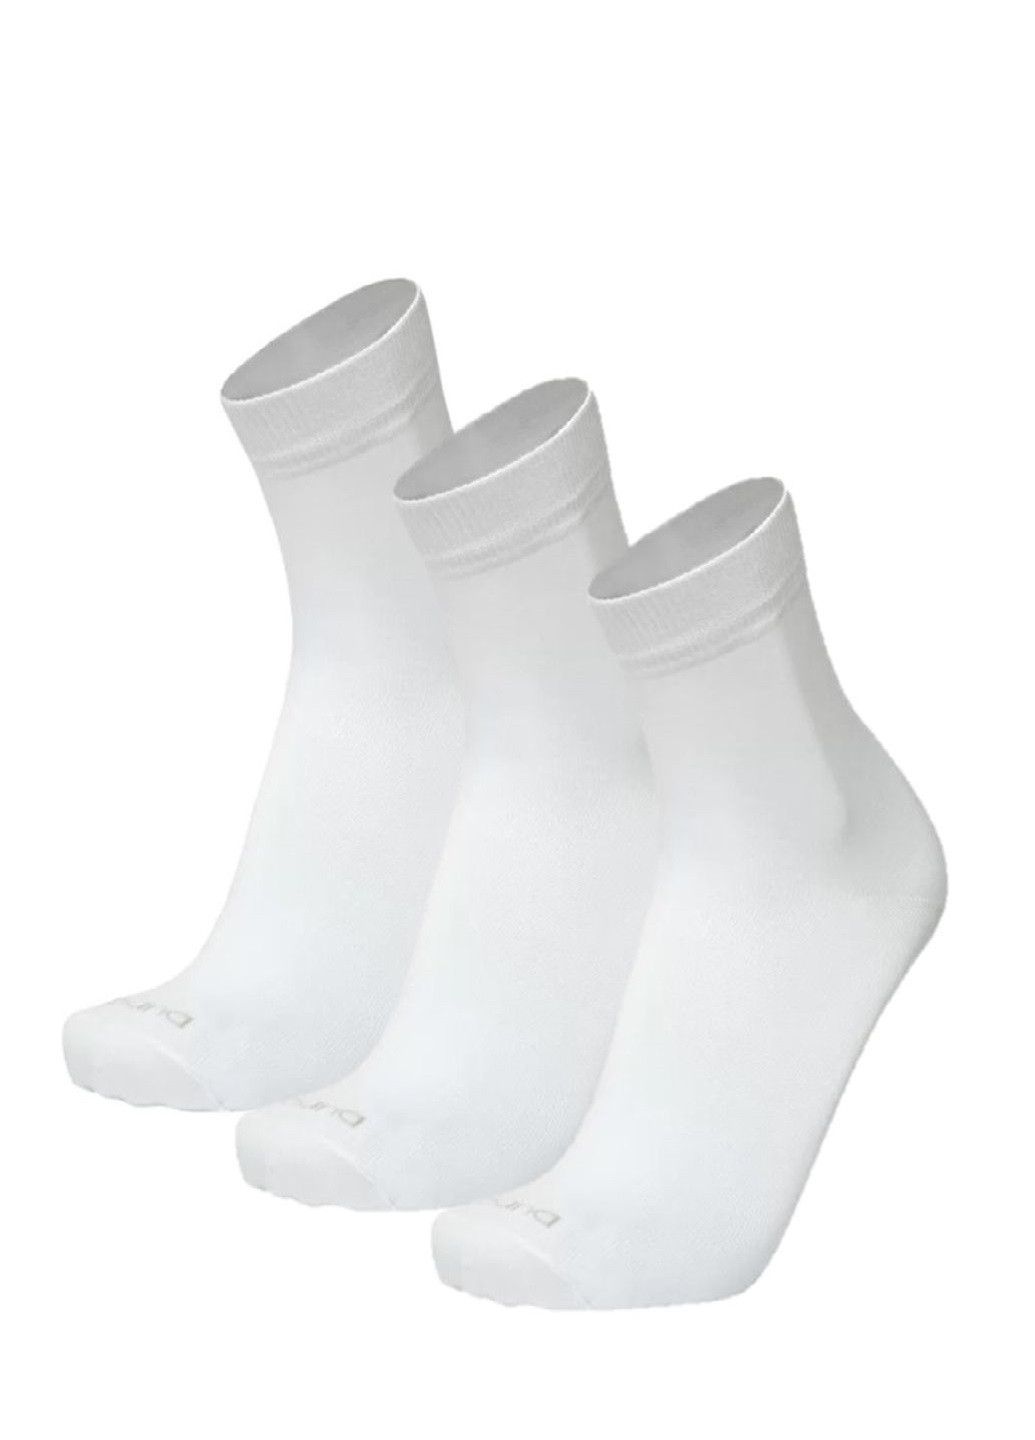 Набор (3шт) мужских носков Duna 2187 однотонные белые повседневные